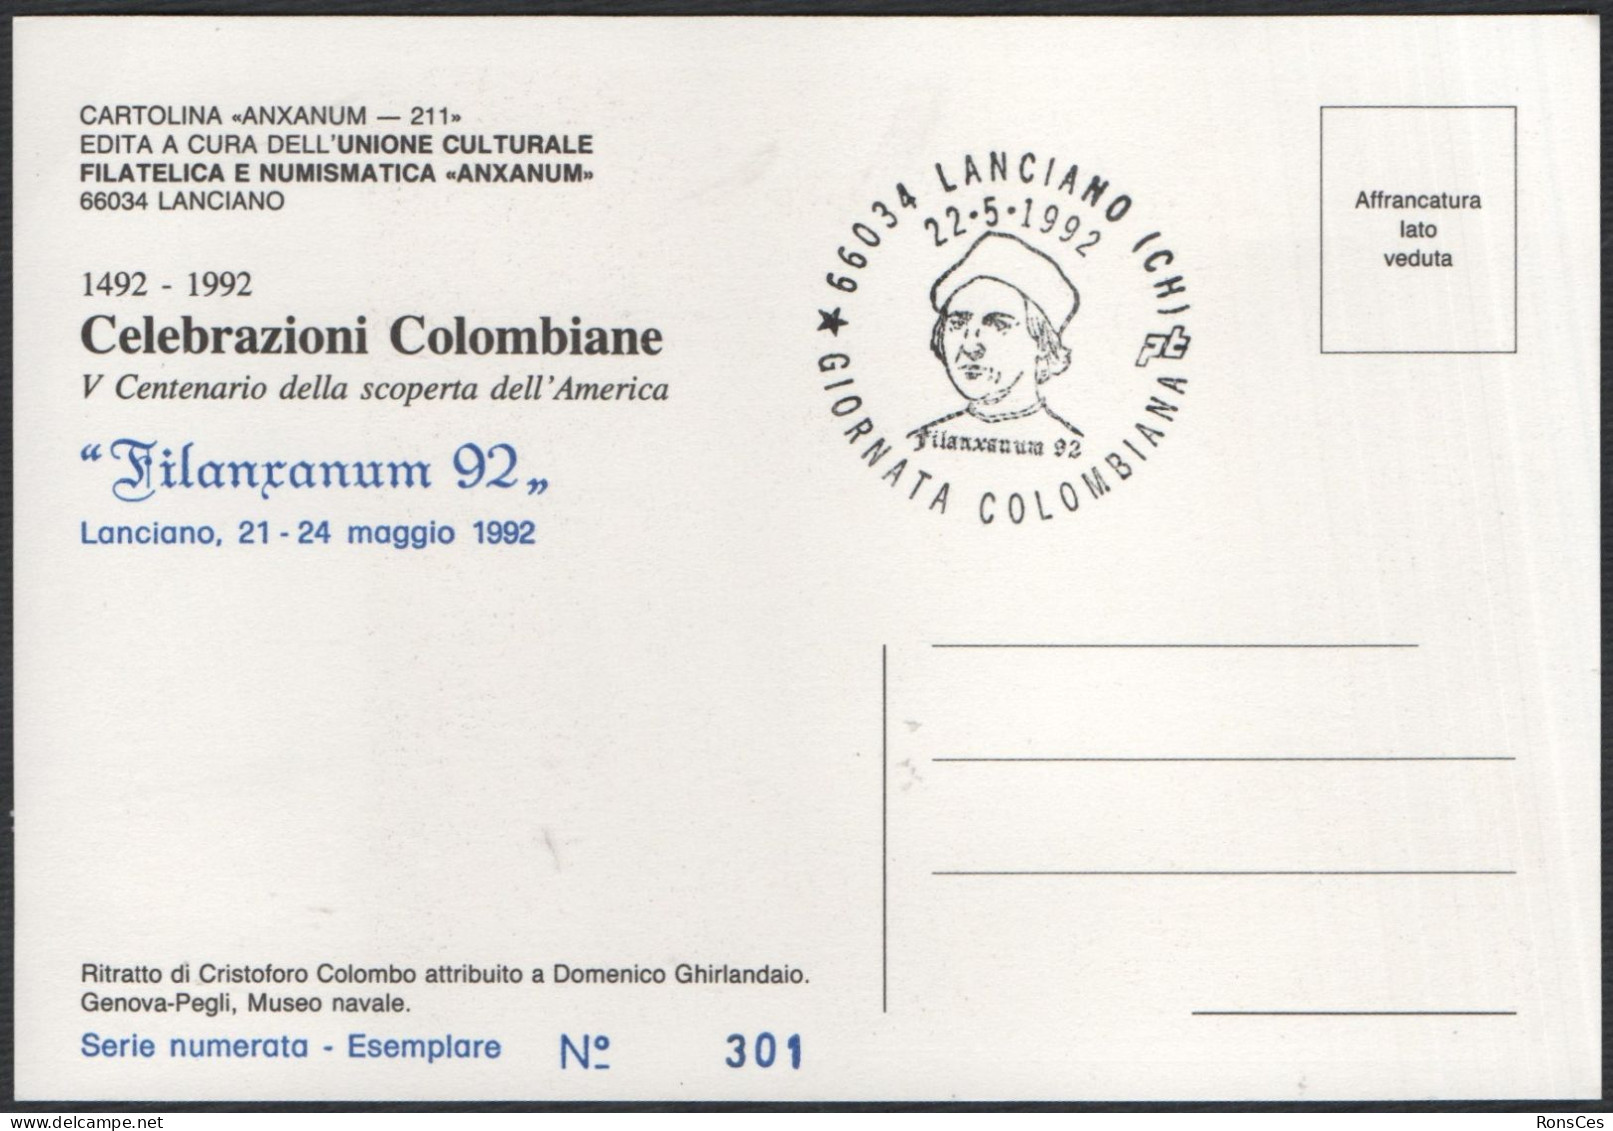 ITALIA LANCIANO (CH) 22.05.1992 - FILANXANUM '92 - GIORNATA COLOMBIANA - CARTOLINA UFFICIALE - A - Philatelic Exhibitions